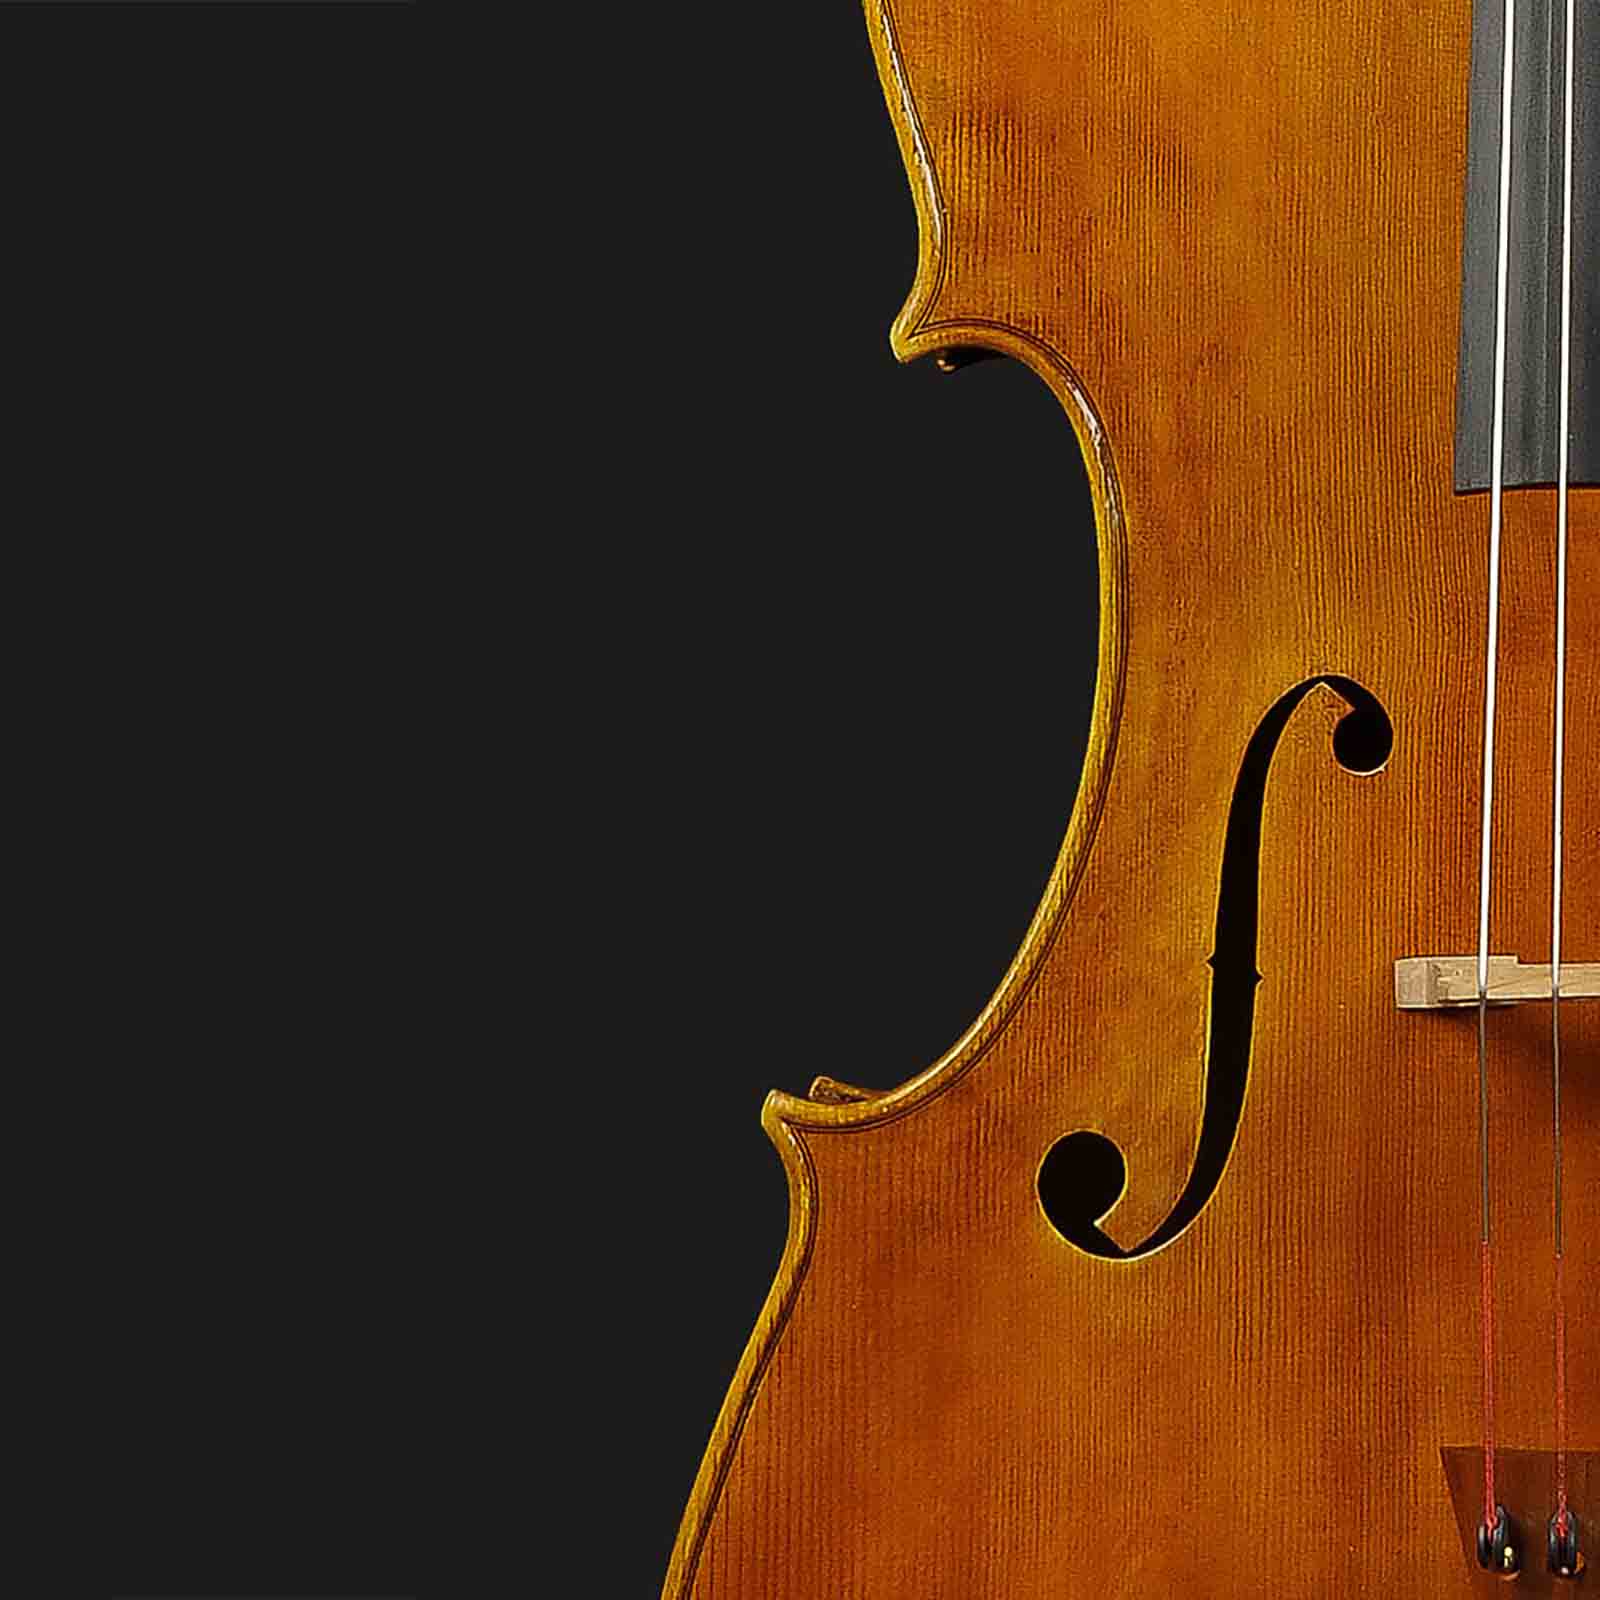 Antonio Stradivari Cremona 1712 “Tullo Ostilio“ - Image 6